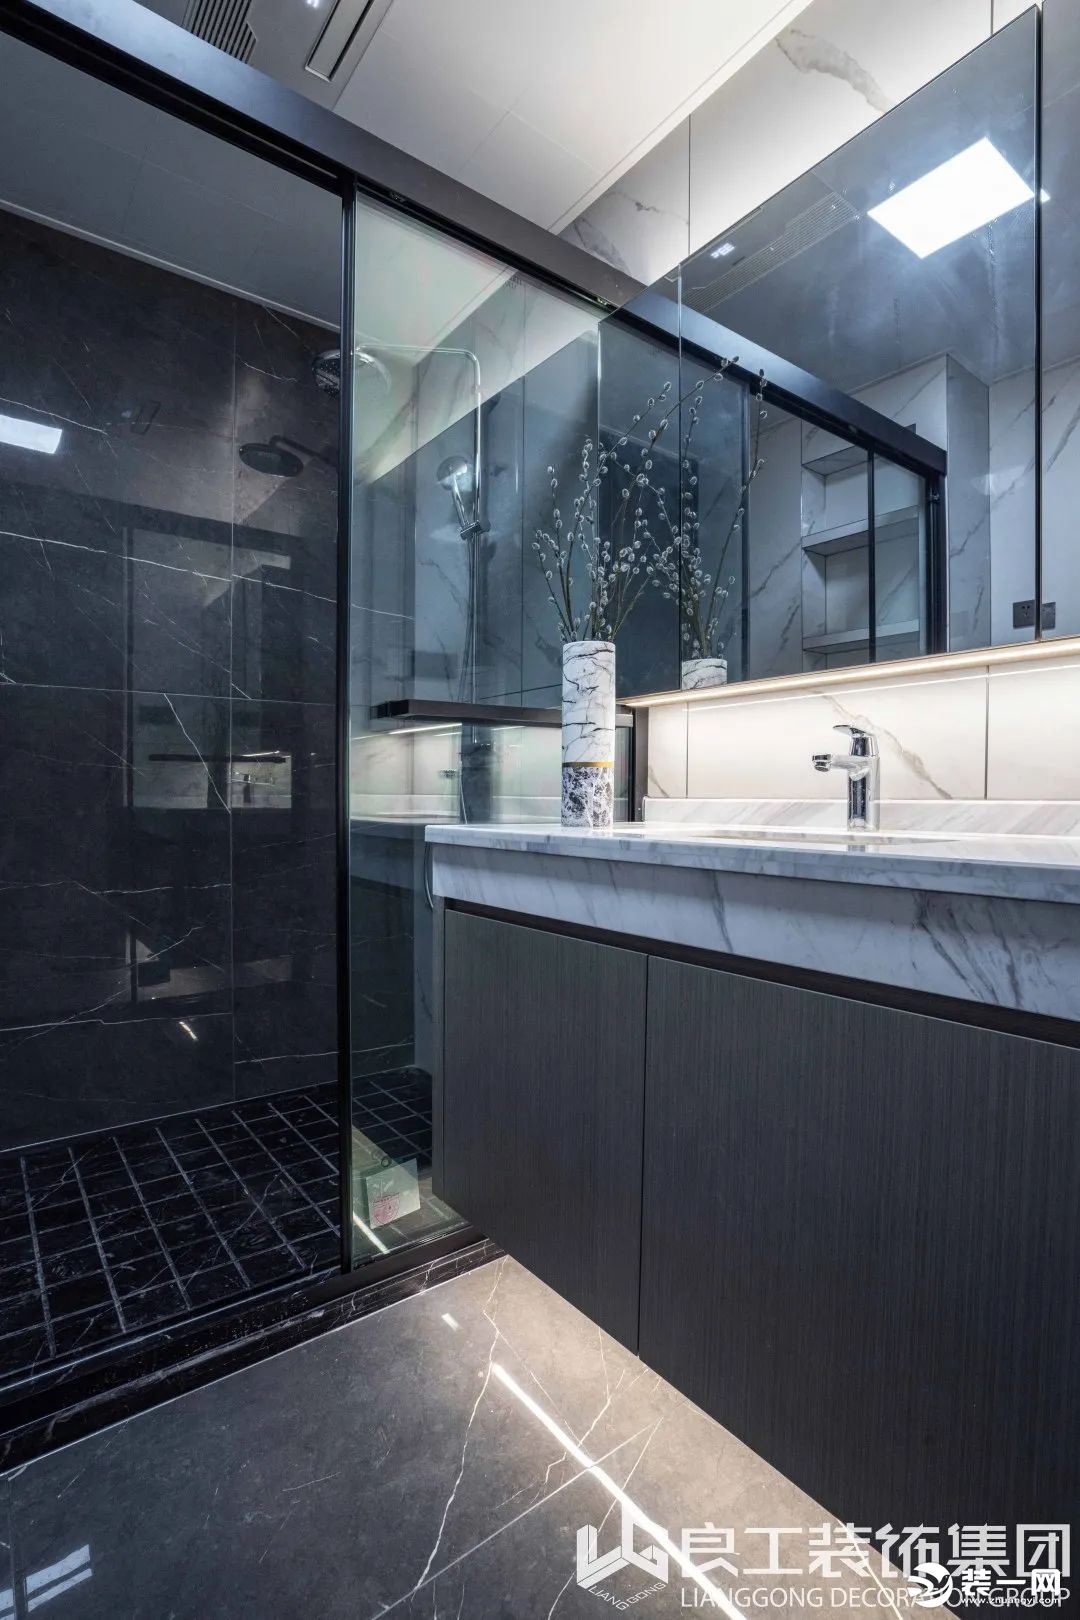 卫浴空间延续了简约的黑白灰调，干湿区以不同纹理与色系的大理石瓷砖区别铺陈，补充了空间的单调设计